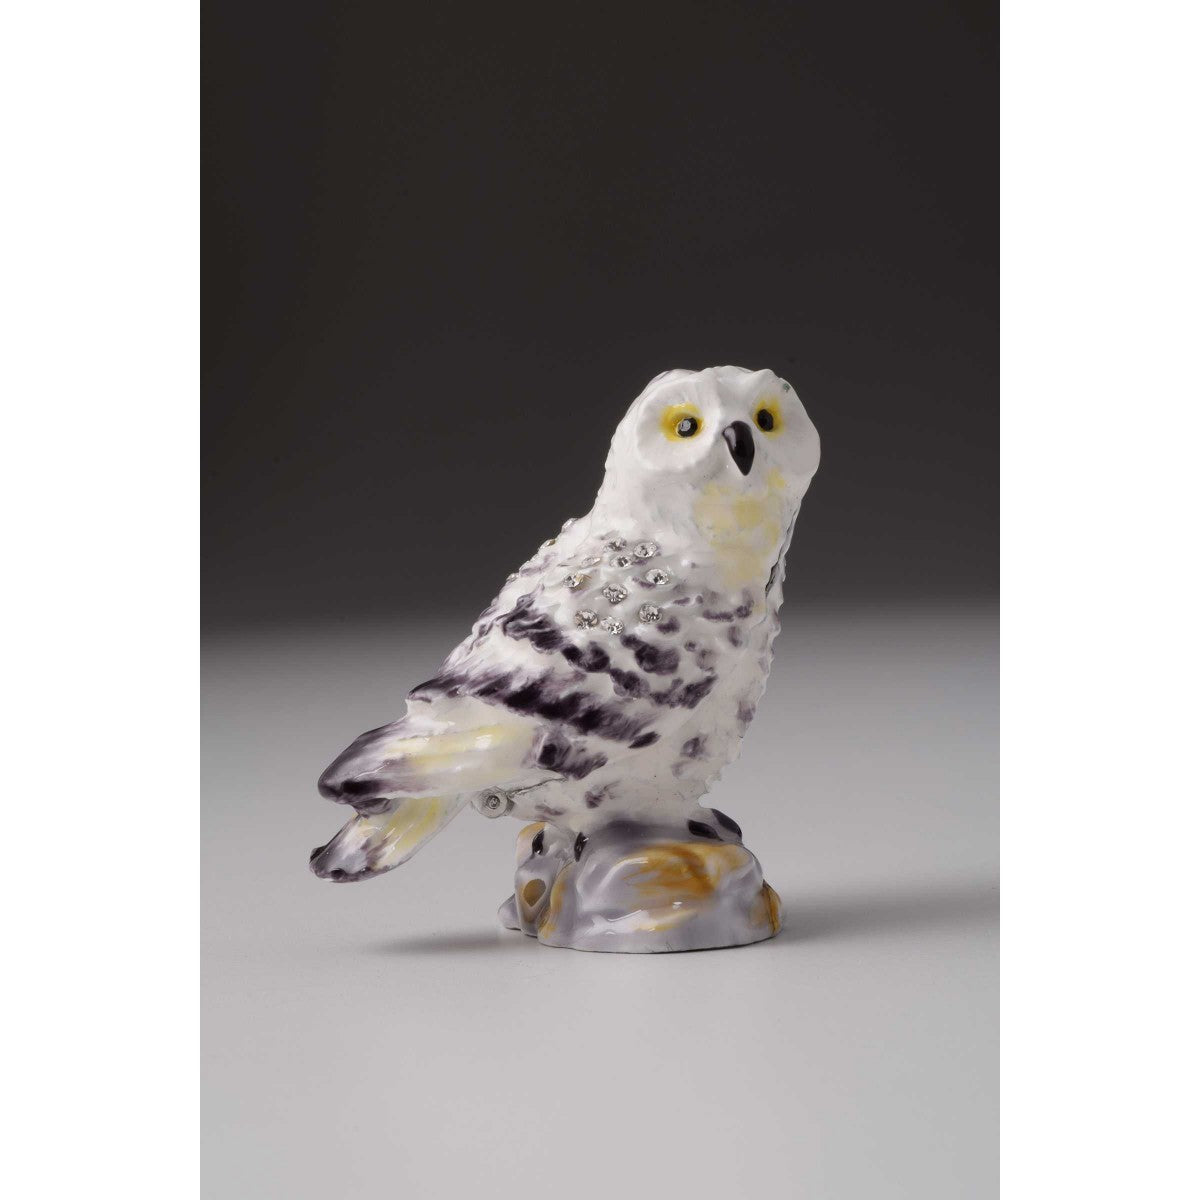 Owl Faberge Styled Trinket Box by Keren Kopal